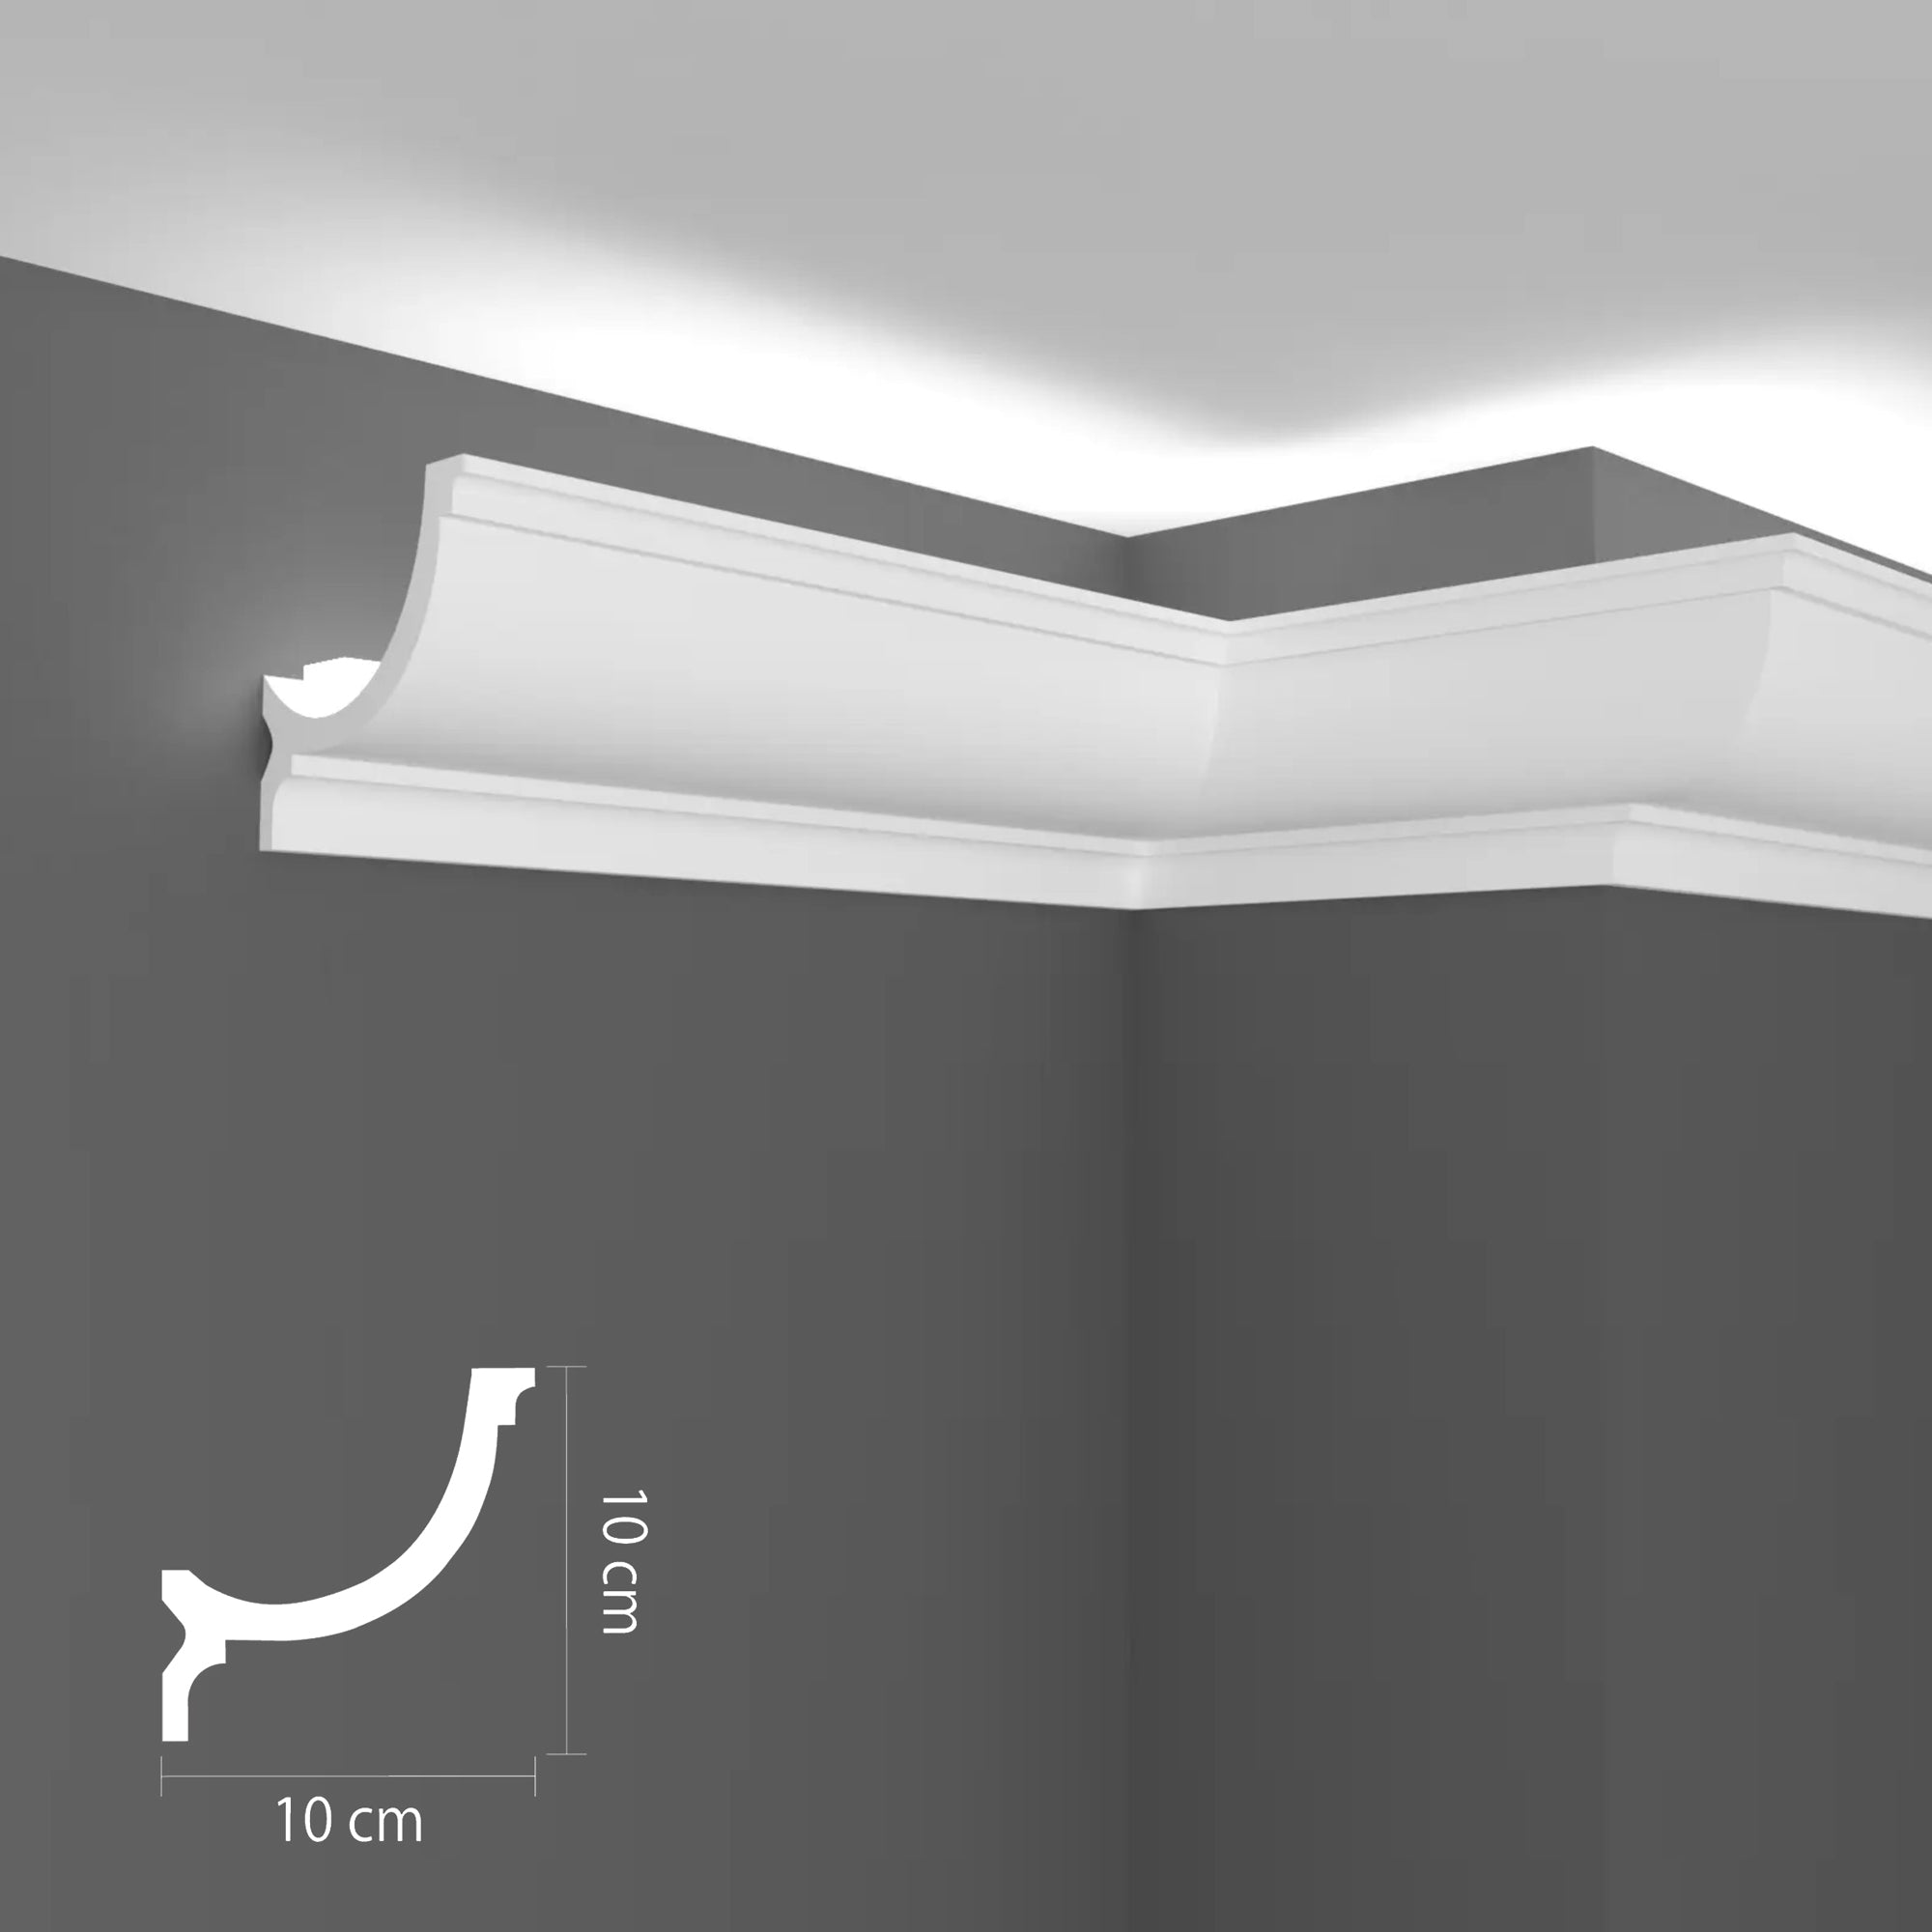 P957 - Cornici velette per led a soffitto e parete per illuminazione indiretta con le strisce led - 2 metri